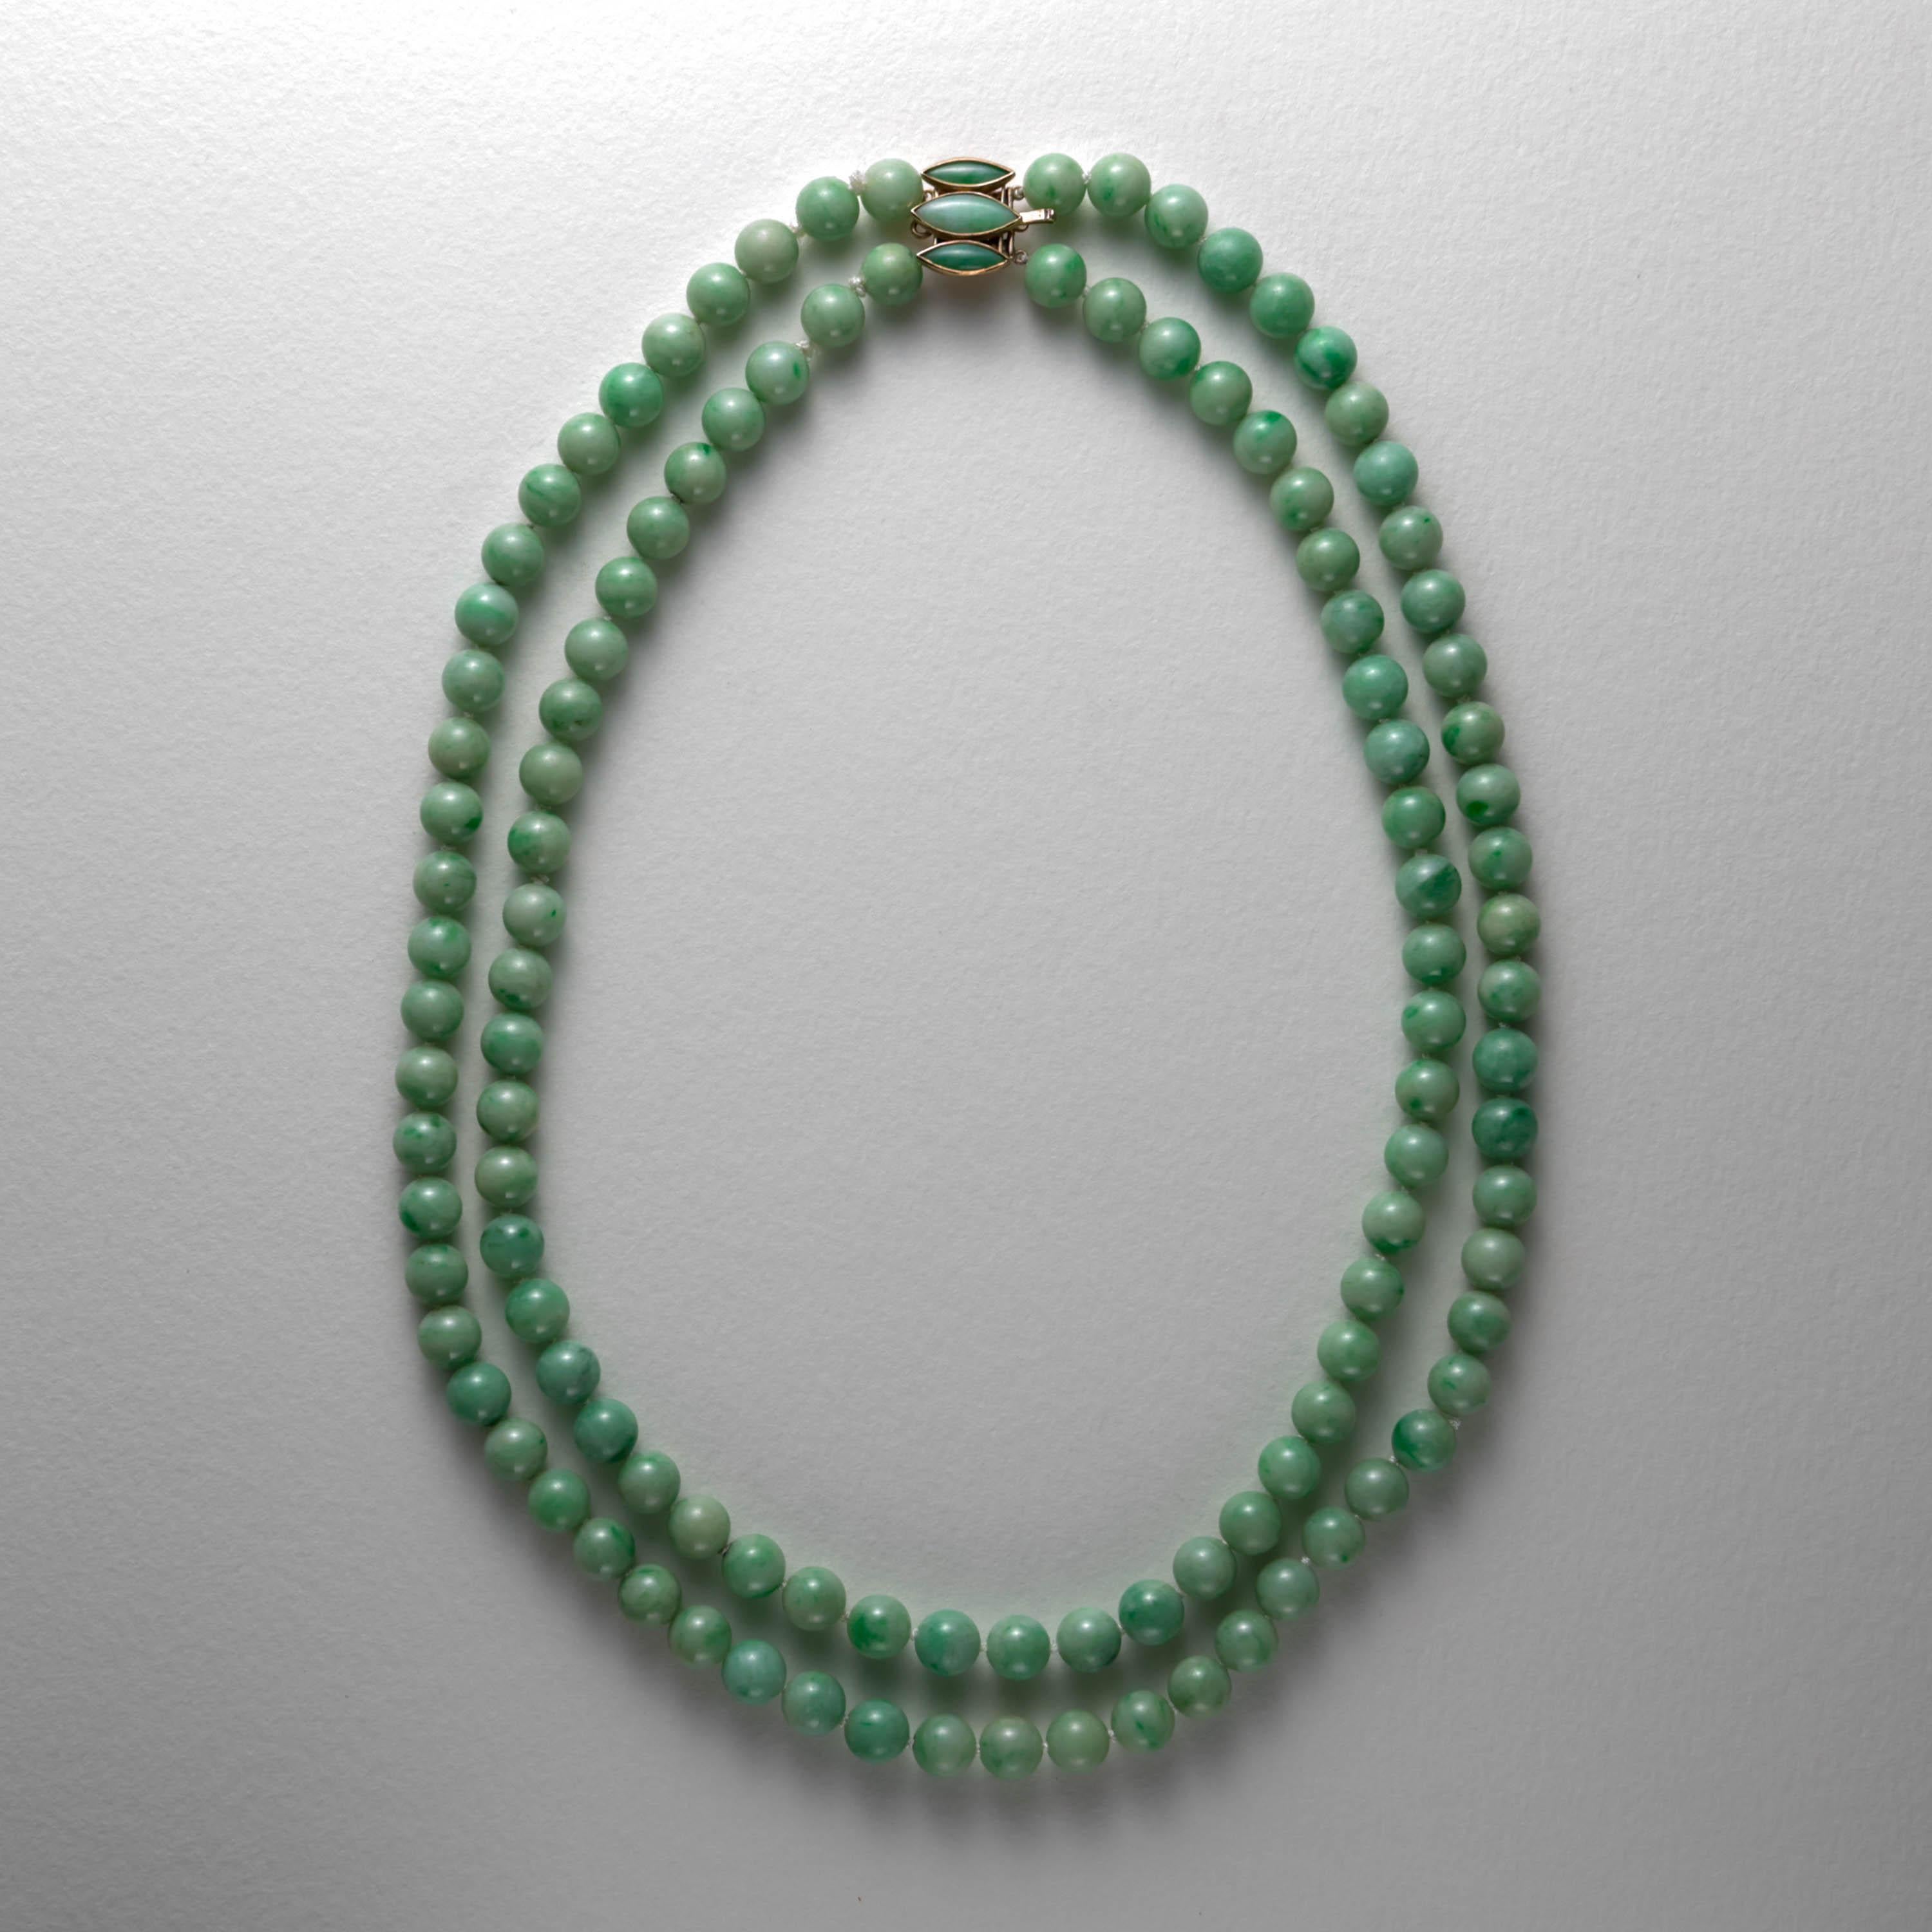 Diese großartige, schöne und seltene doppelreihige Jade-Halskette besteht aus 114 handgeschnitzten und polierten, unbehandelten burmesischen Jadeit-Perlen von etwa 9,5 mm. Es handelt sich um massive, feine Jadeperlen der alten Schule, die keine